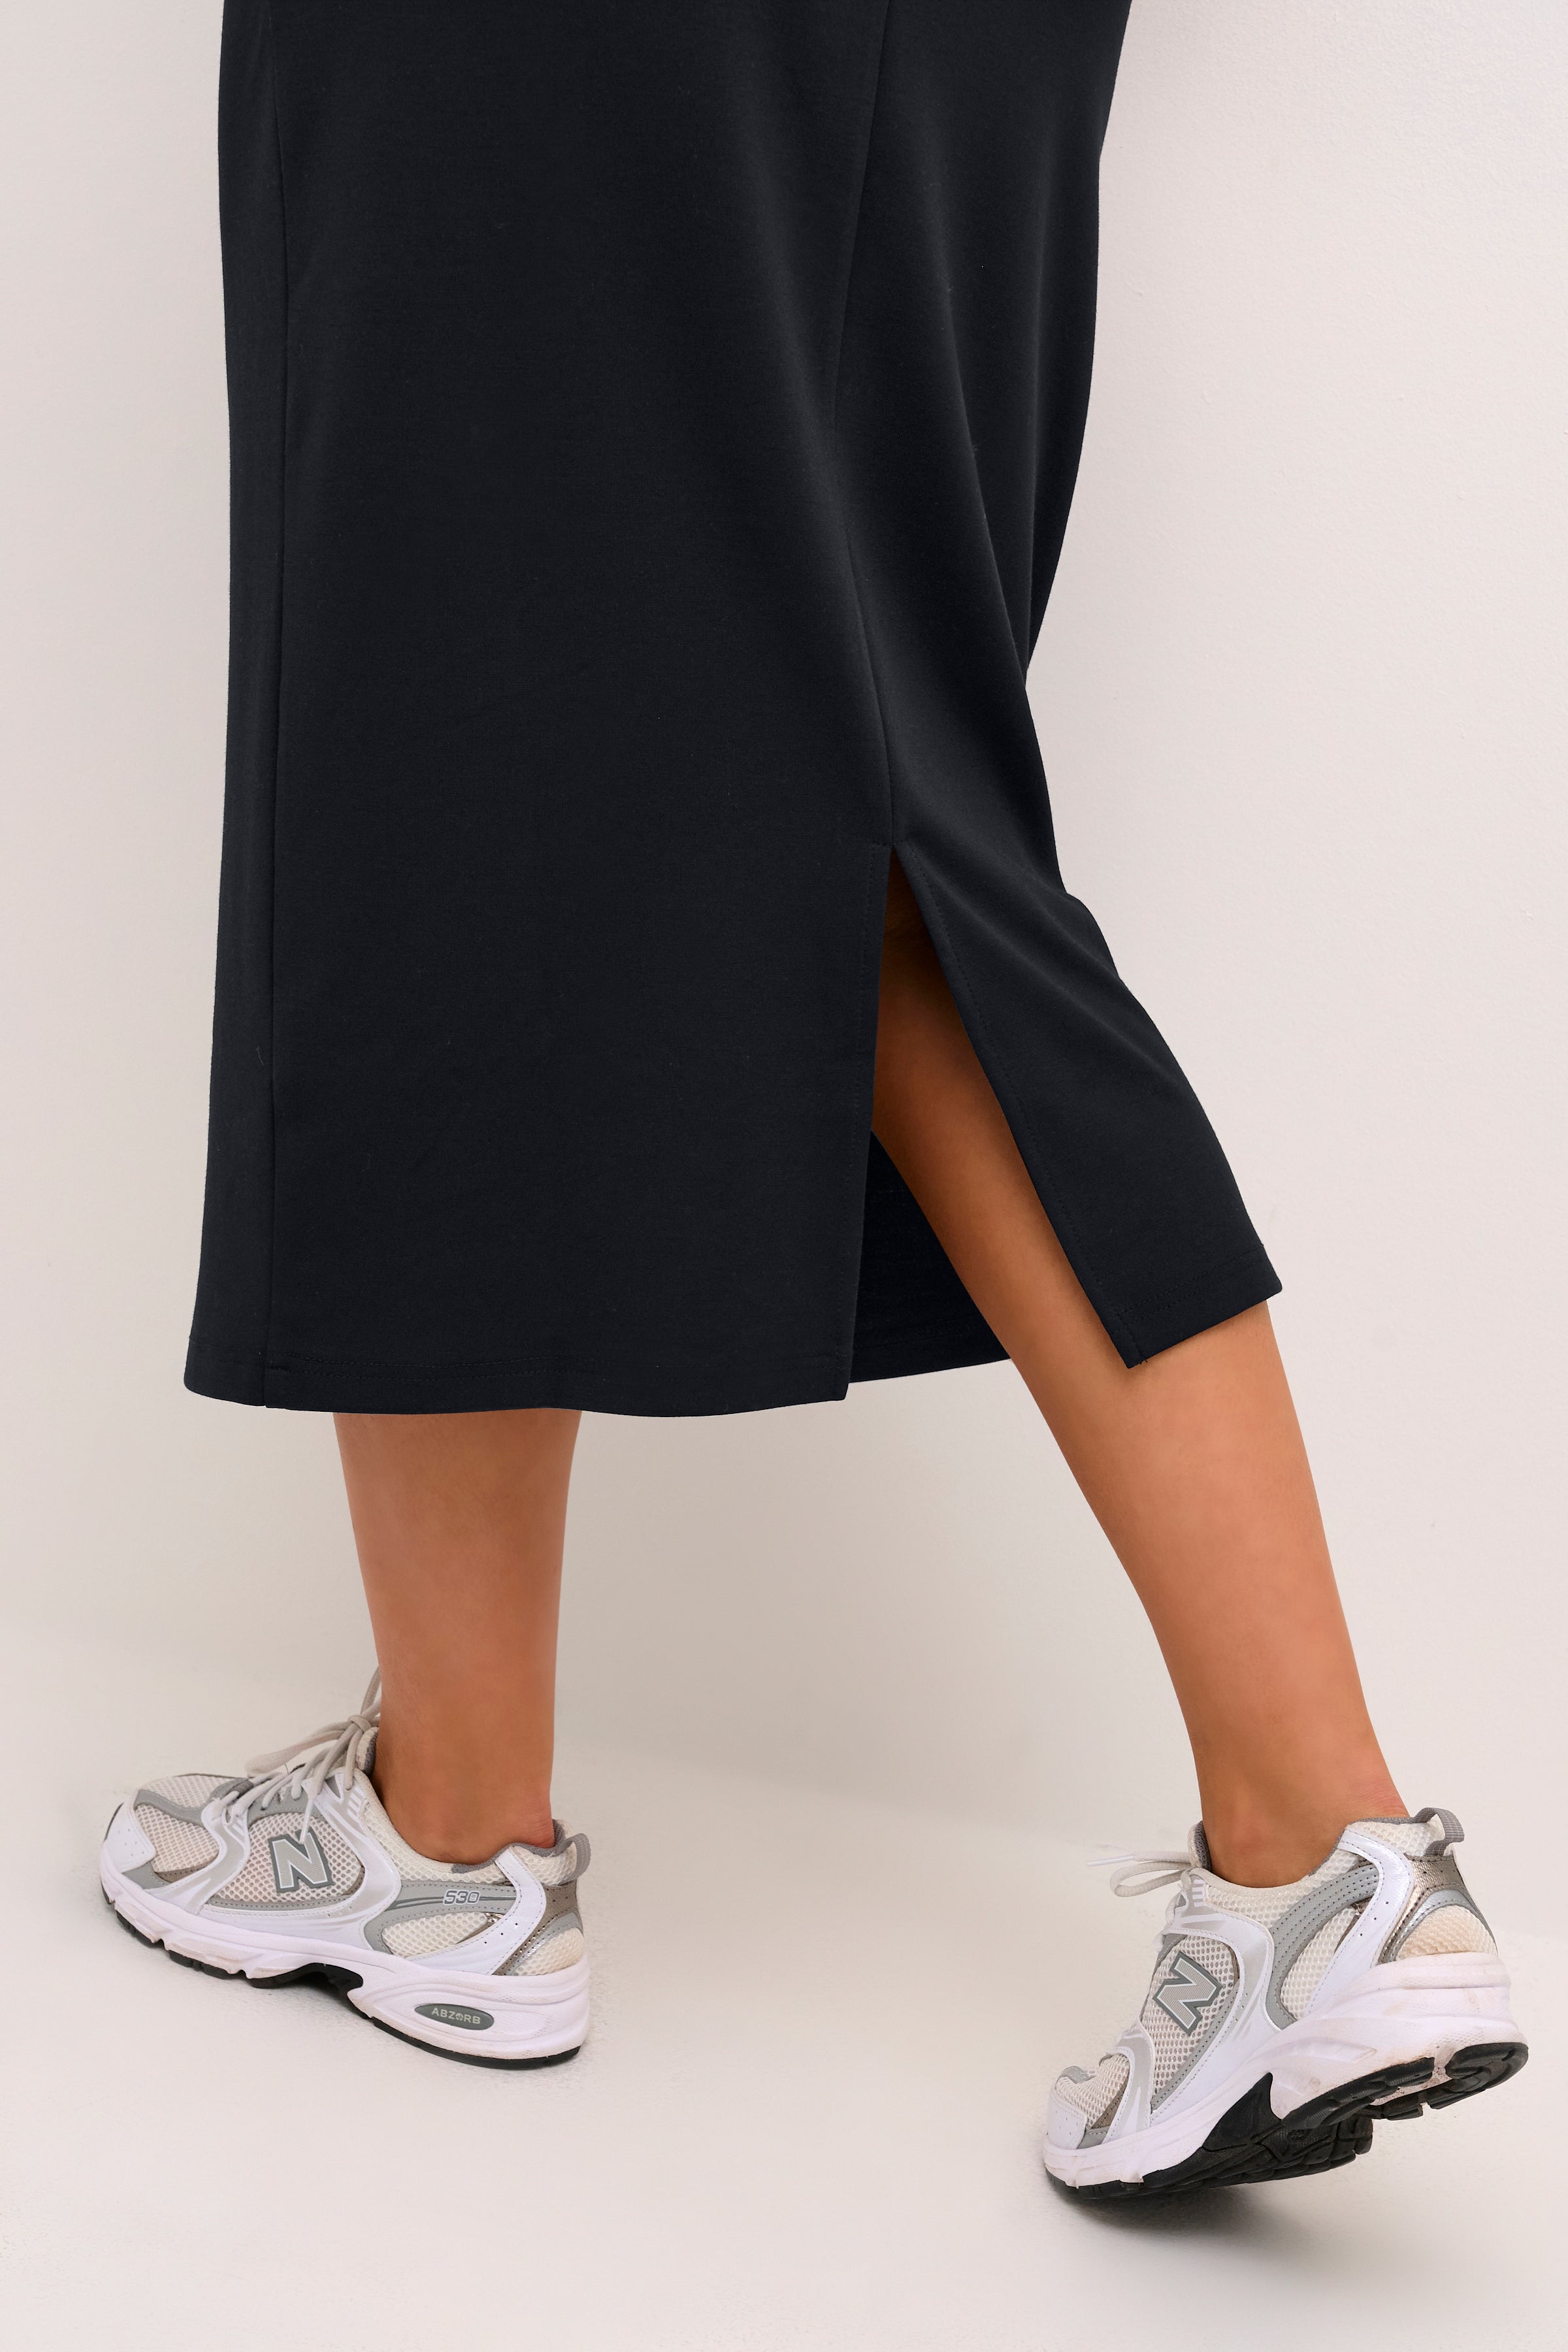 Kaelsa Skirt